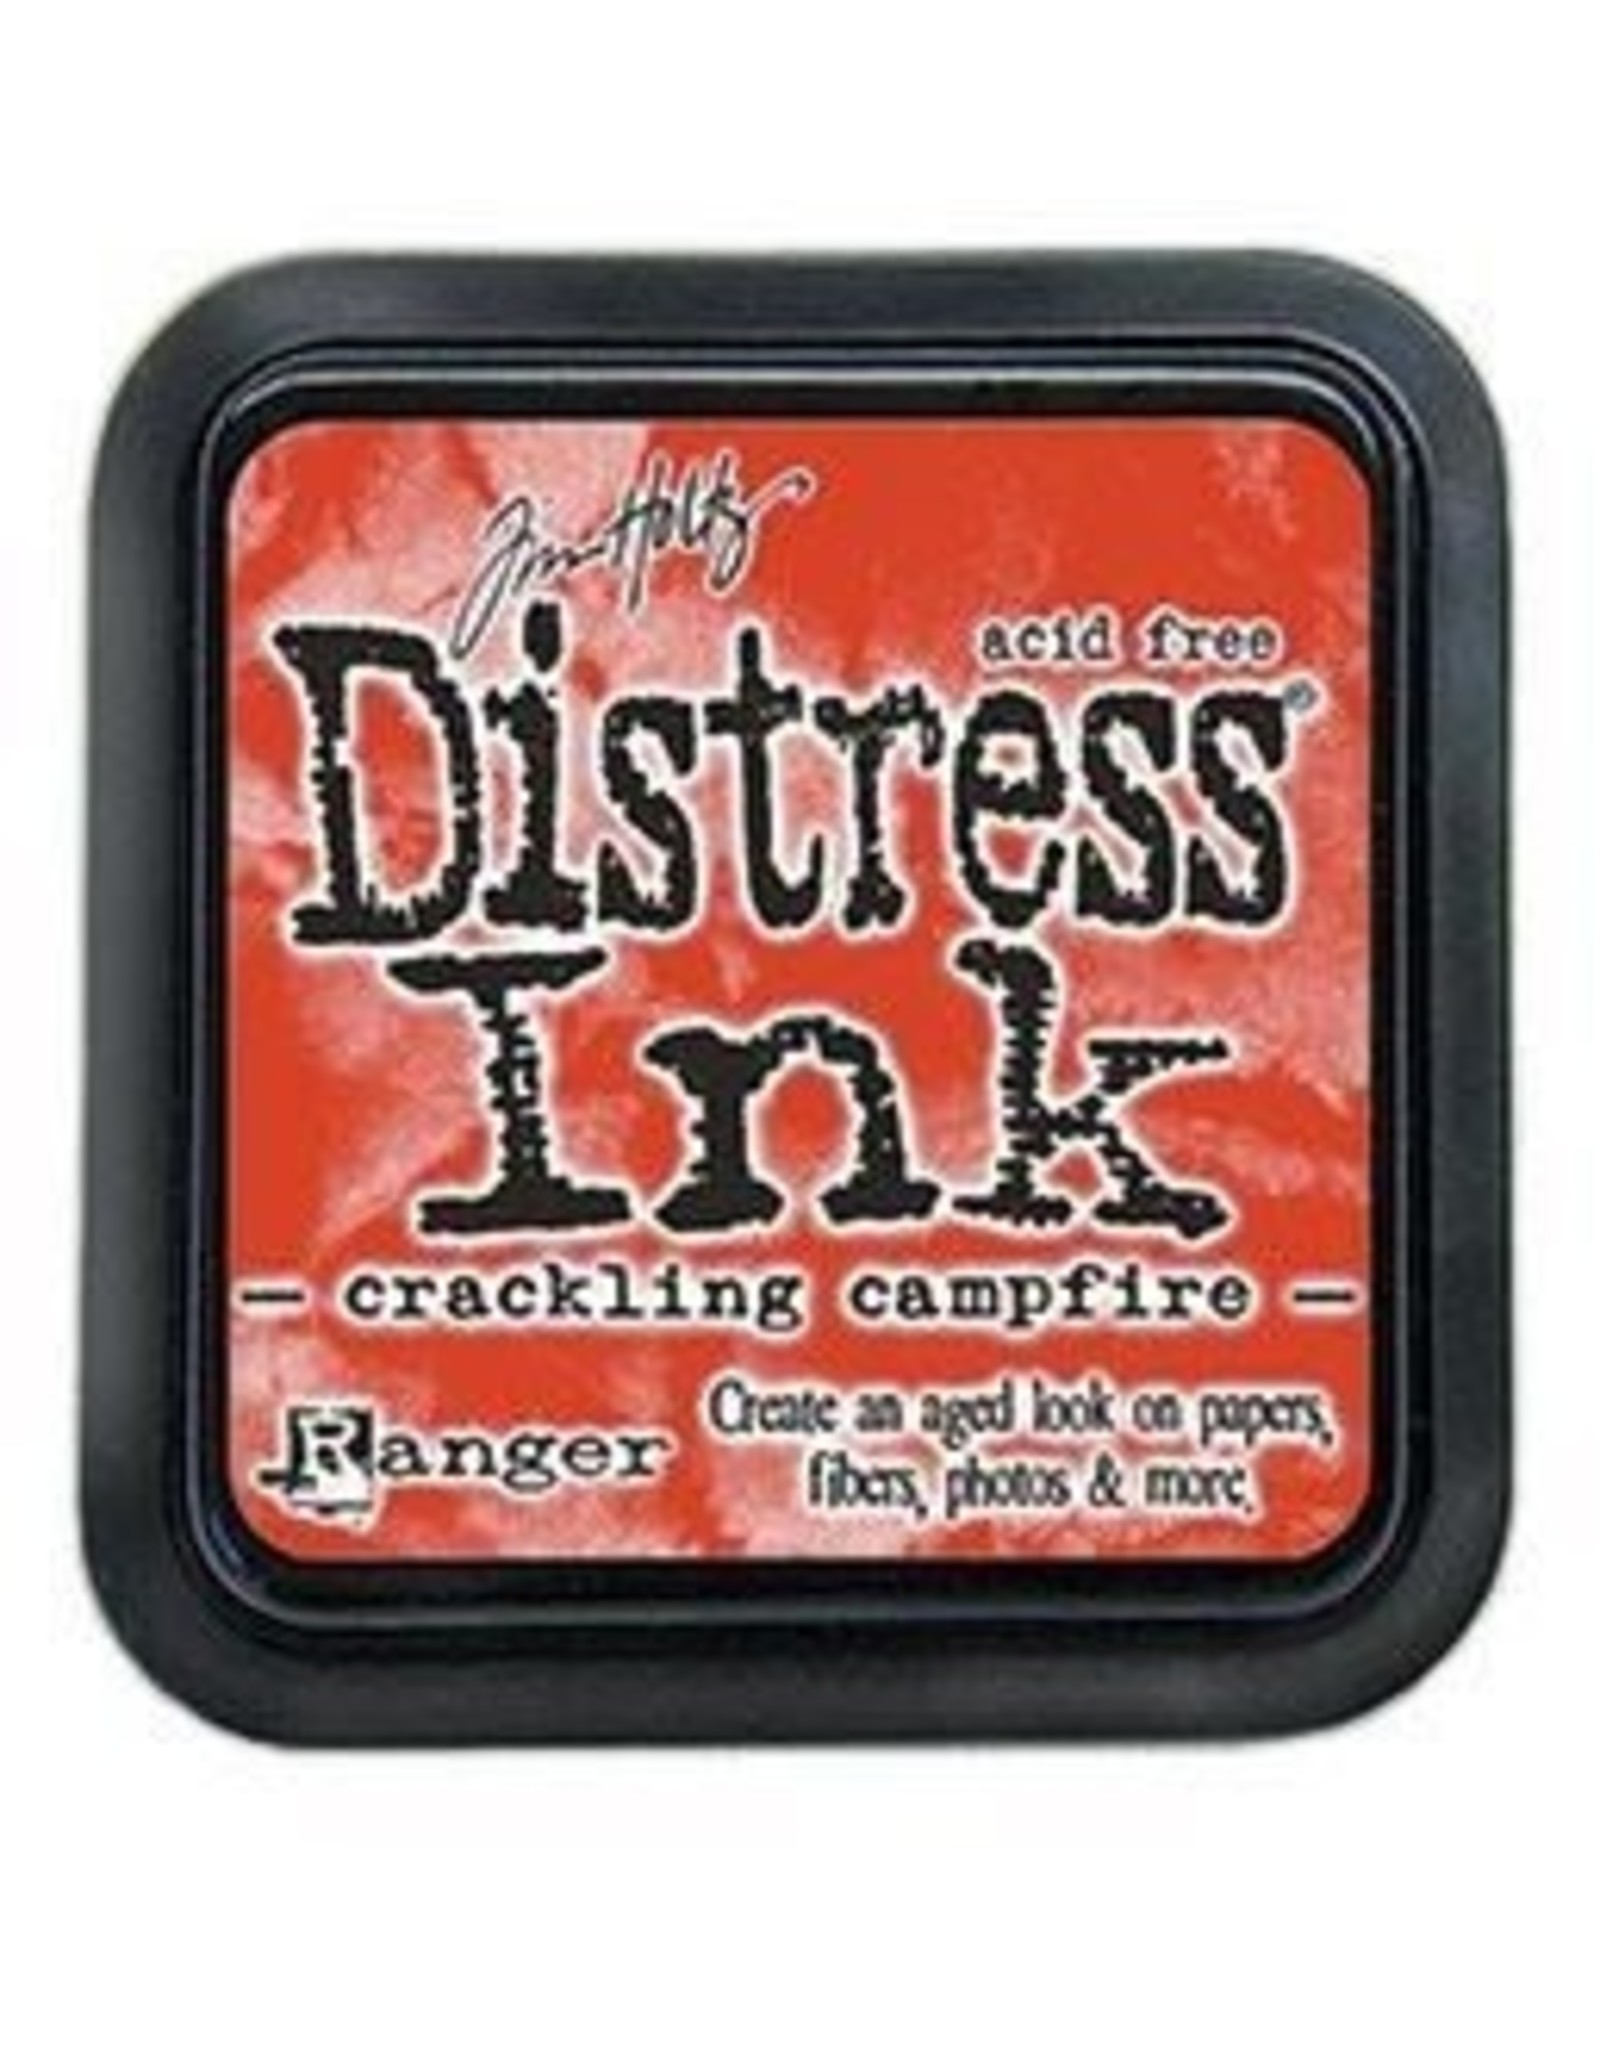 Tim Holtz - Ranger Distress Ink Crackling Campfire